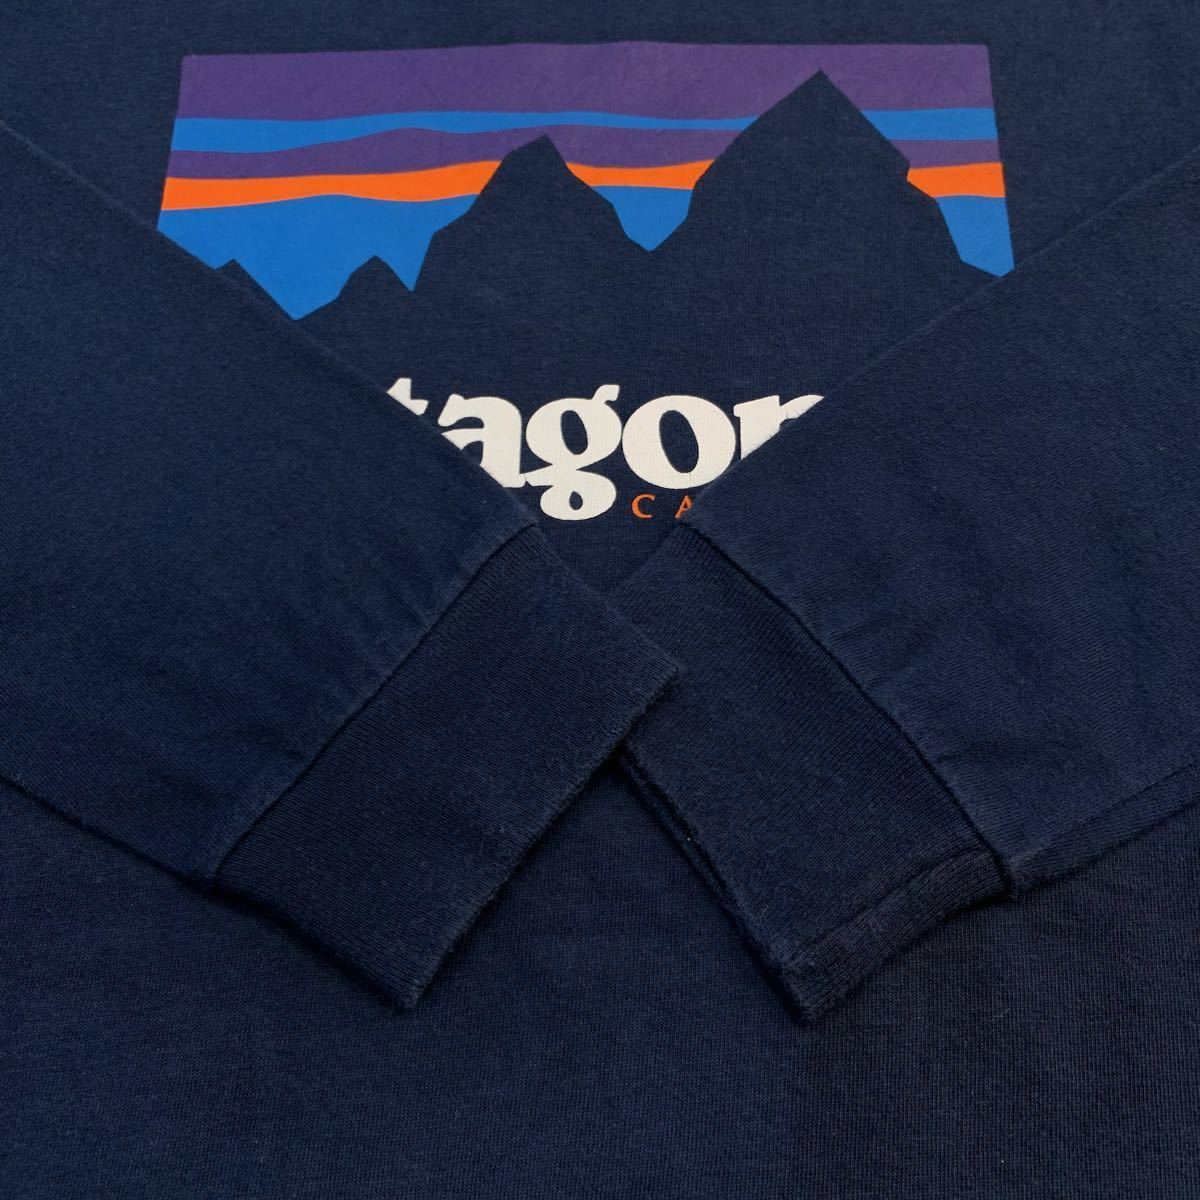 2016 patagonia L/S Shop Sticker Cotton T shirt ventura CALIFORNIA パタゴニア 長袖 コットン Tシャツ ロンT Tee ベンチュラ 38934FA16 _画像6